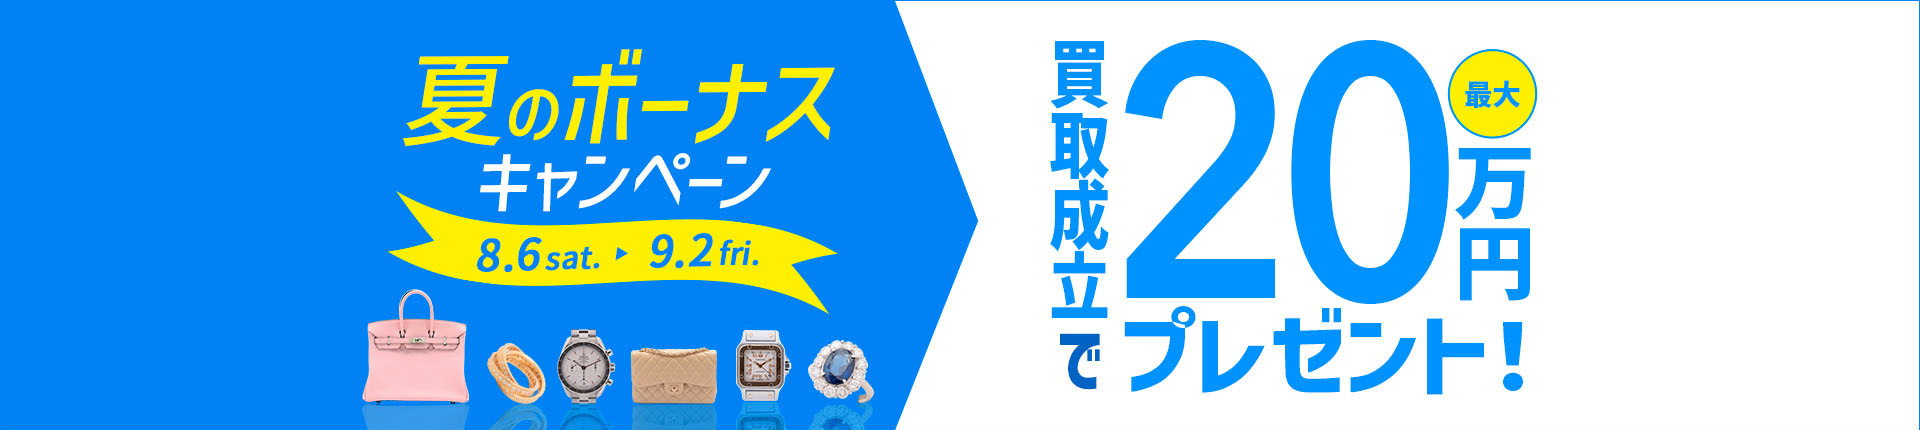 夏のボーナスキャンペーン 8.6 sat. - 9.2 fri. 買取成立で最大20万円プレゼント！